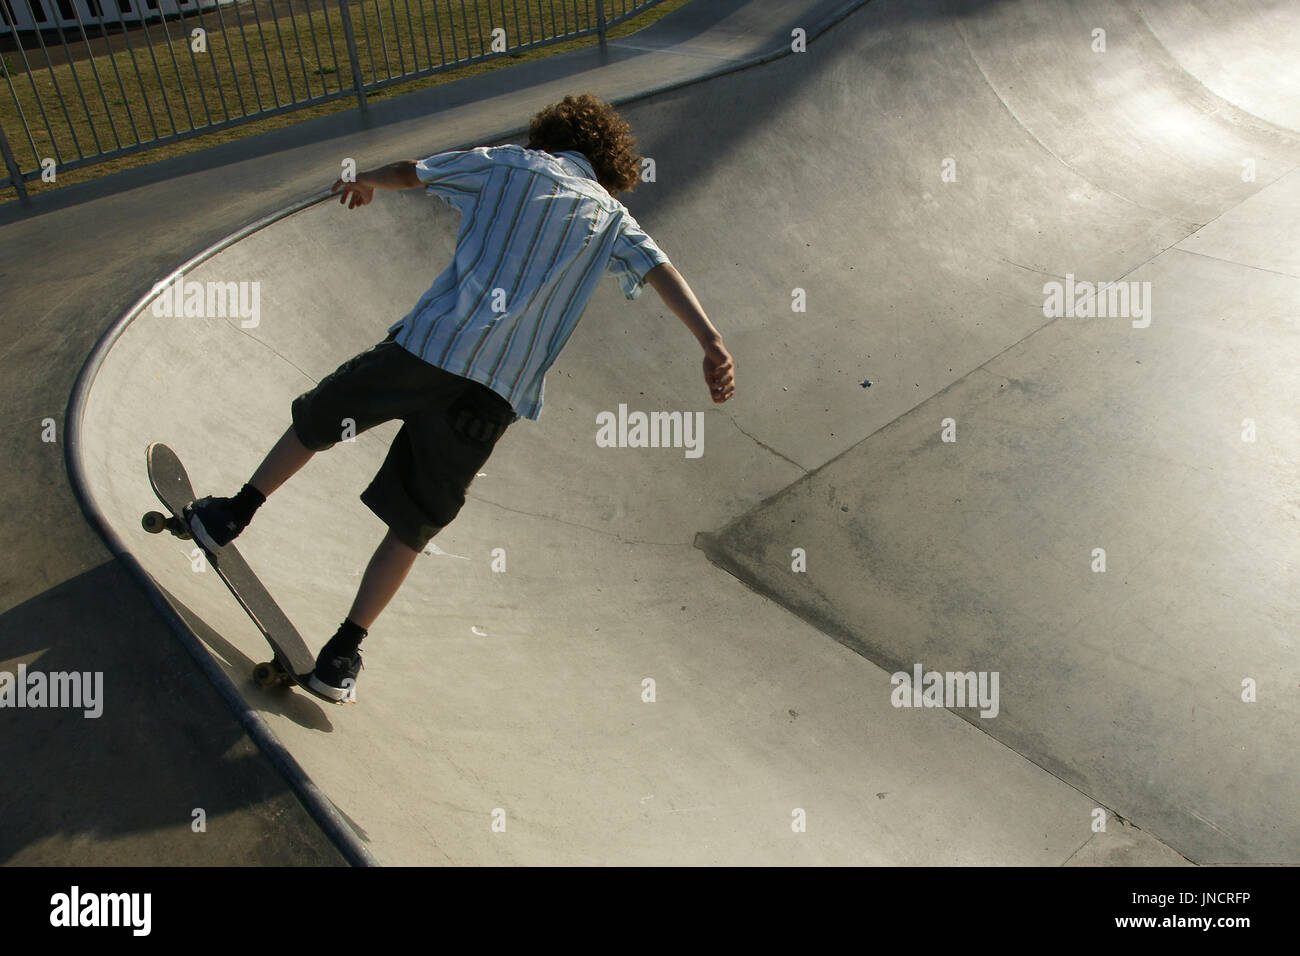 Le bol de patinage skateboarder at skatepark Banque D'Images